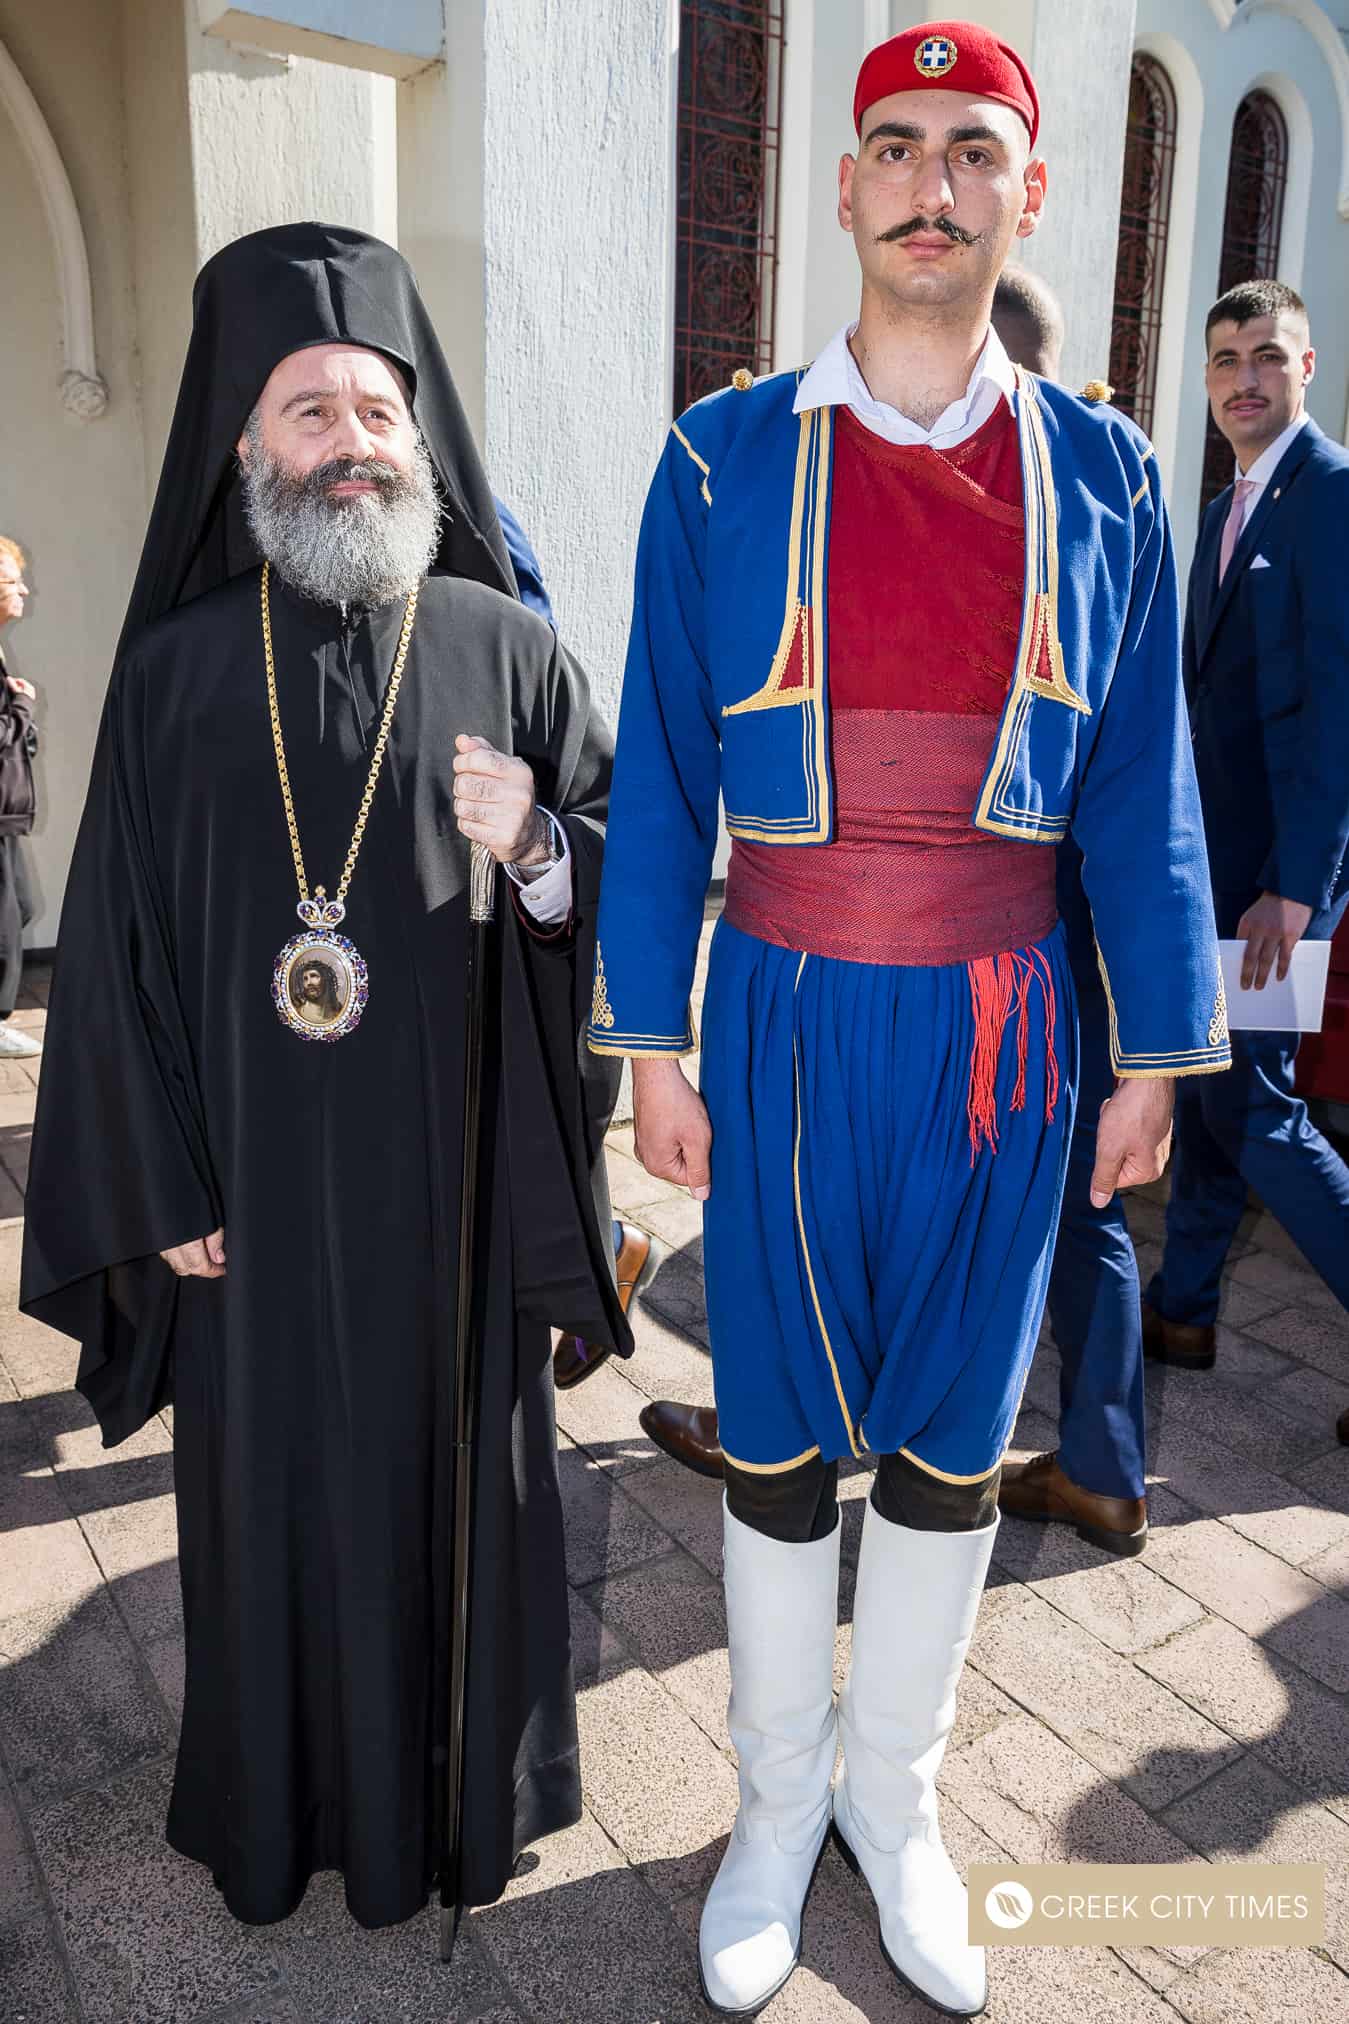 Ο περίφημος Εύζωνας της Ελλάδας συναντά τον Αρχιεπίσκοπο Μακάριο στη Μελβούρνη